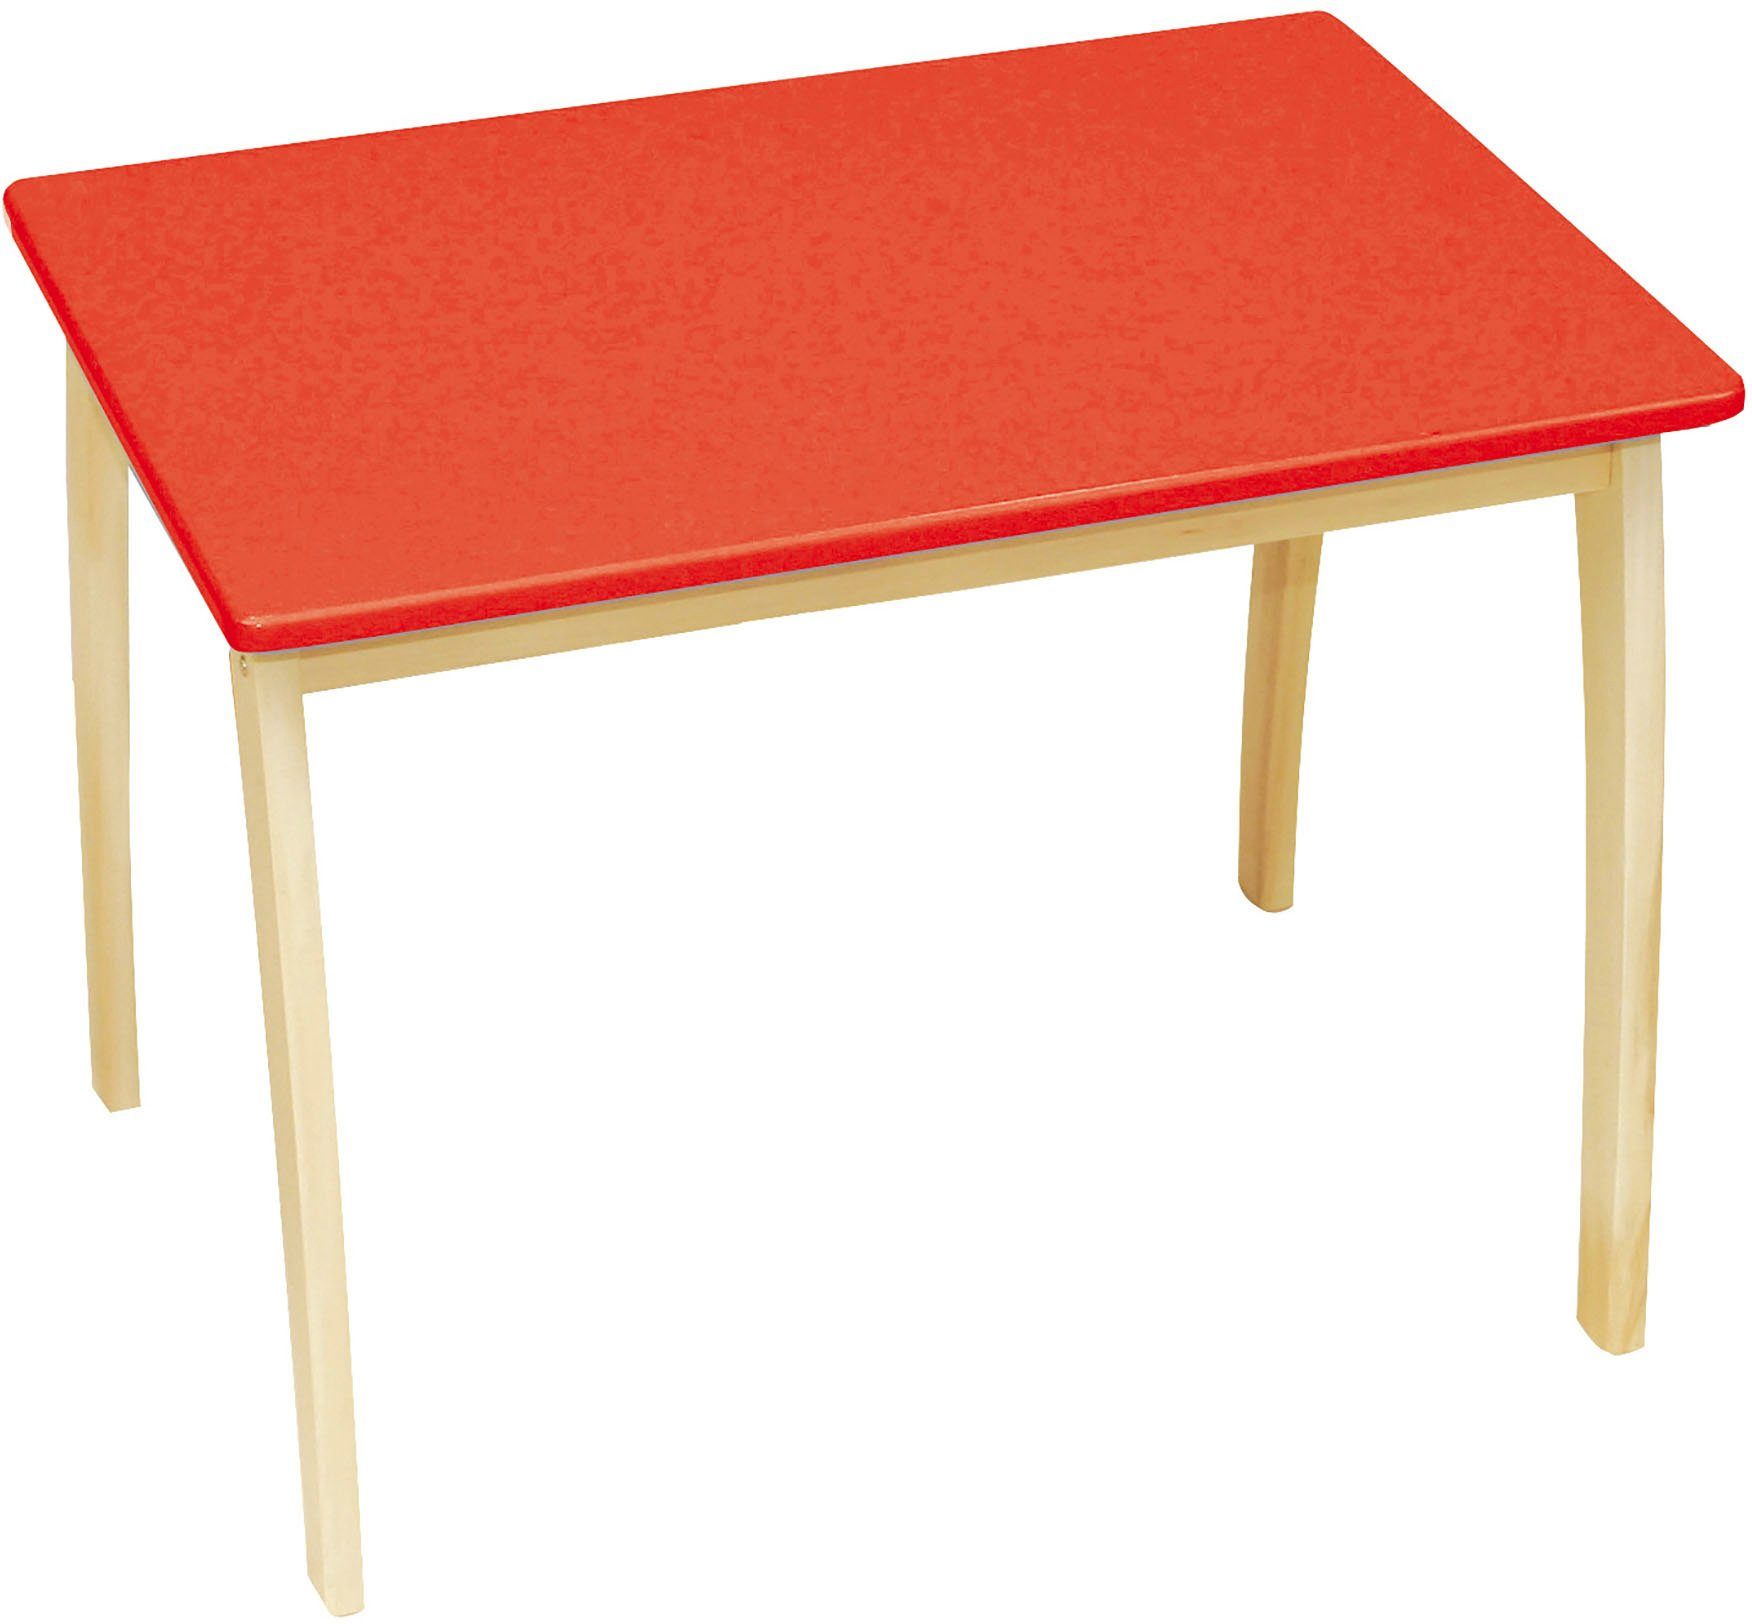 roba® Kindertisch mit farbig lackierter Tischplatte, rot orange